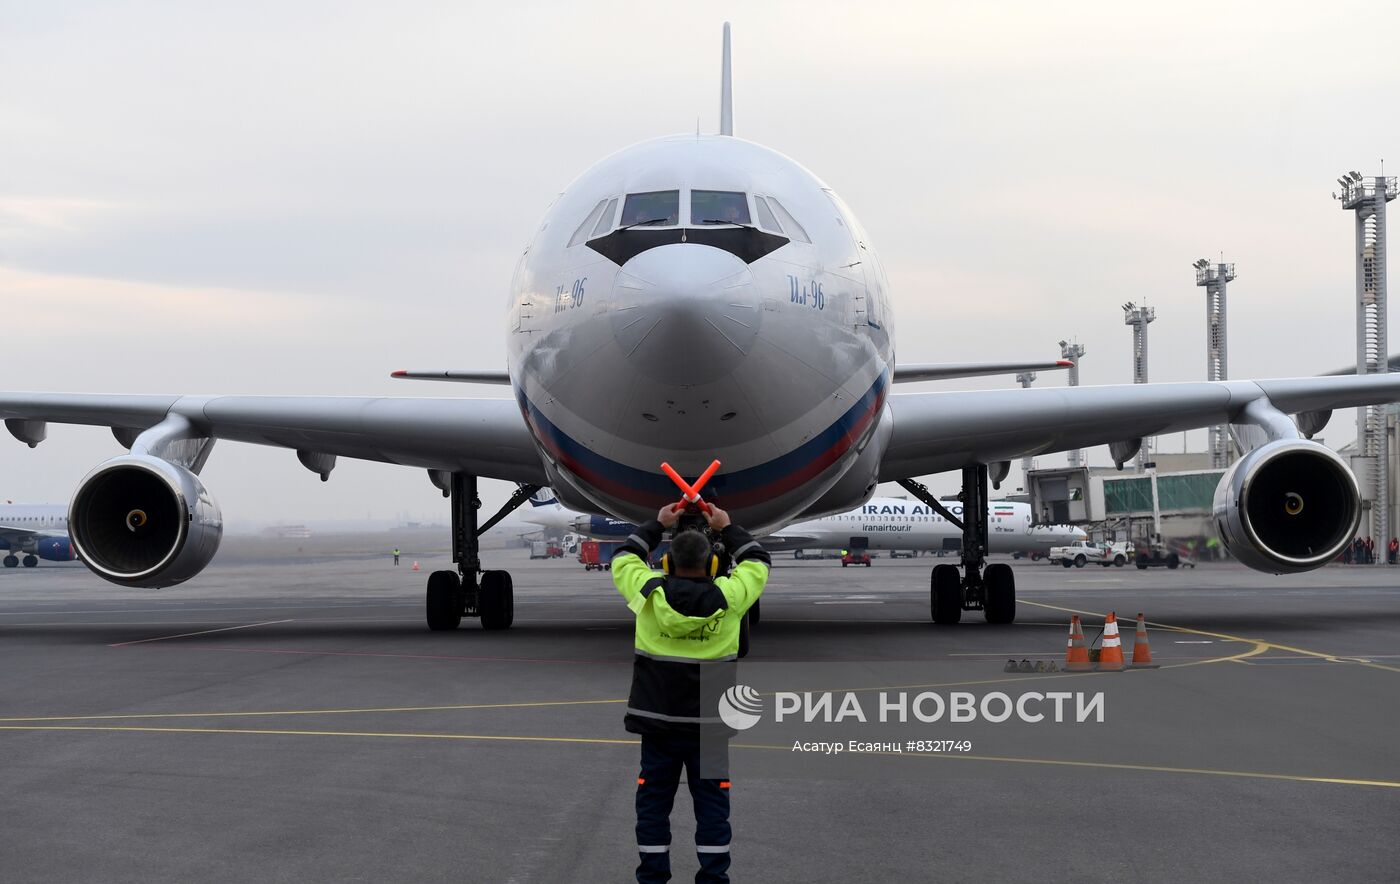 Глава МИД РФ С. Лавров прибыл в Ереван для участия в мероприятиях ОДКБ